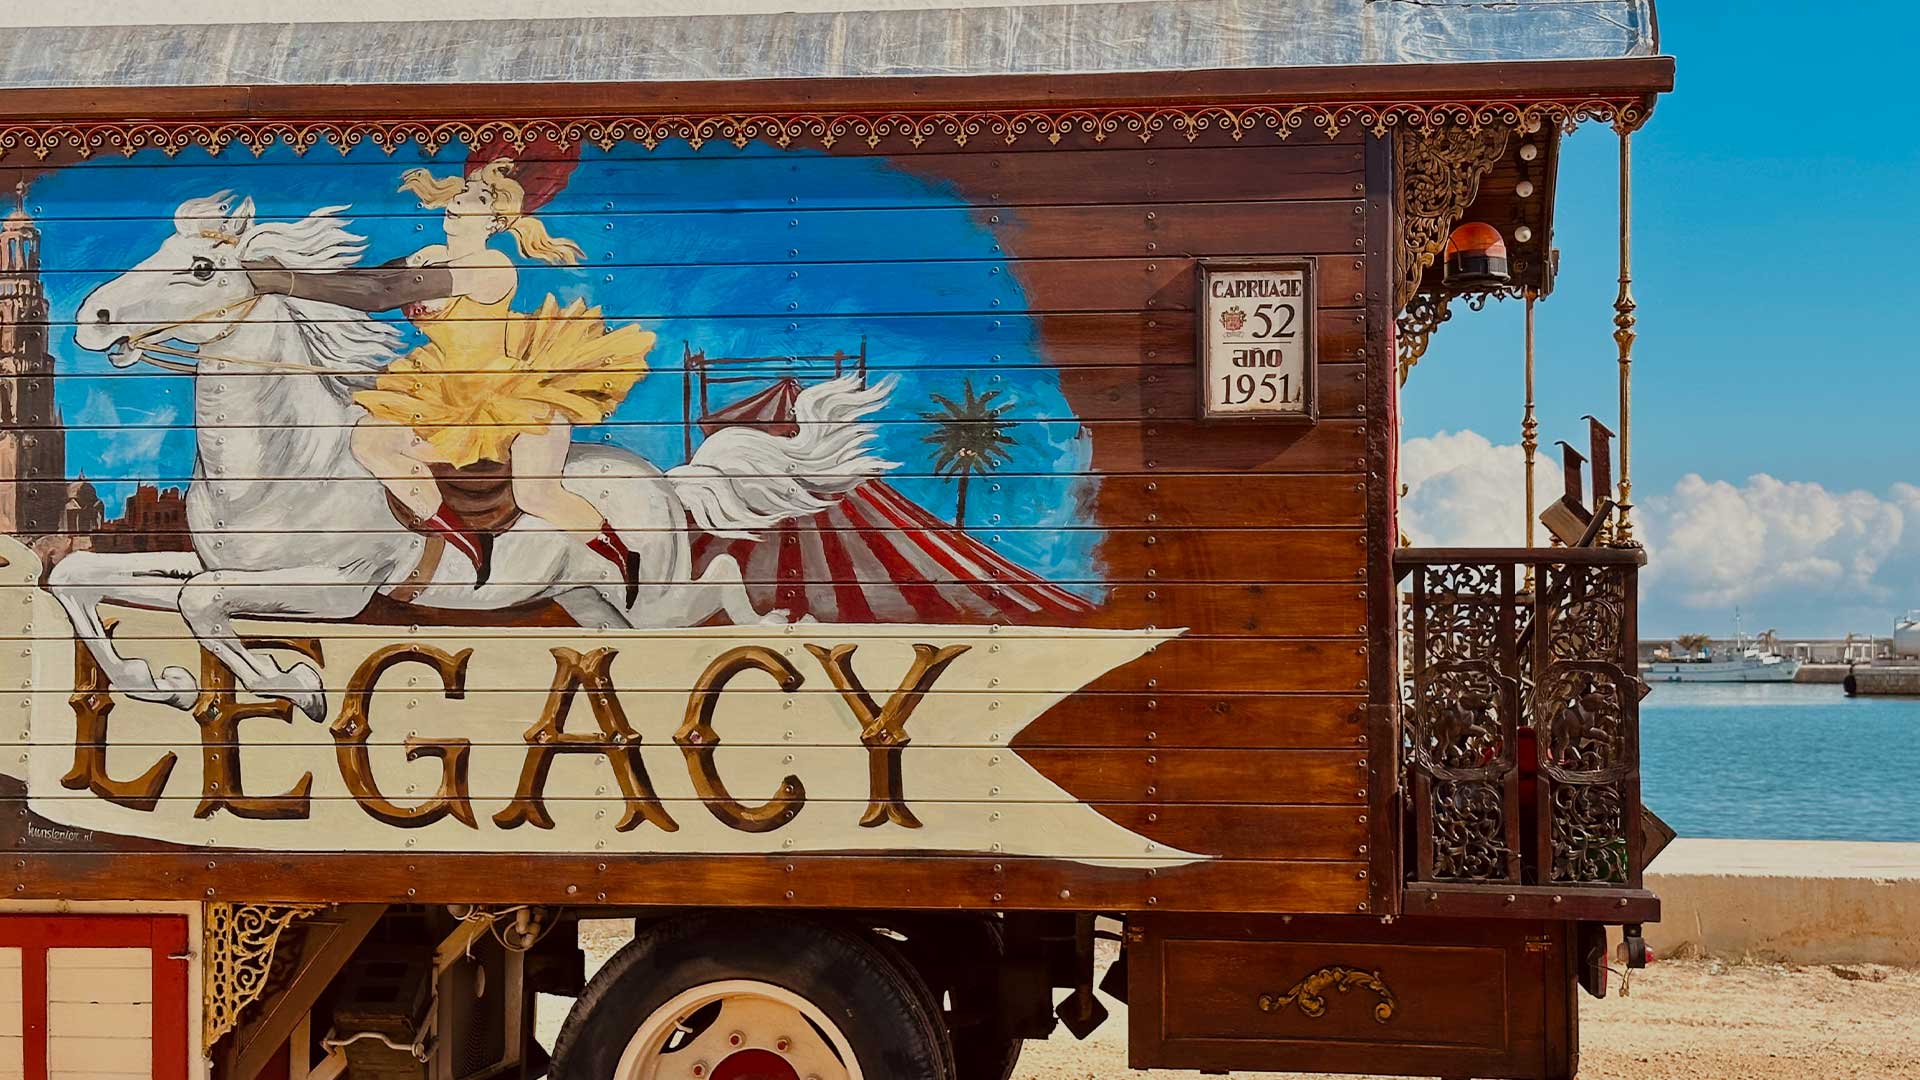 Antiguo carruaje de la caravana del circo Raluy Legacy pintado con mujer con vestido amarillo sobre caballo blanco saltando por encima del logo del circo.